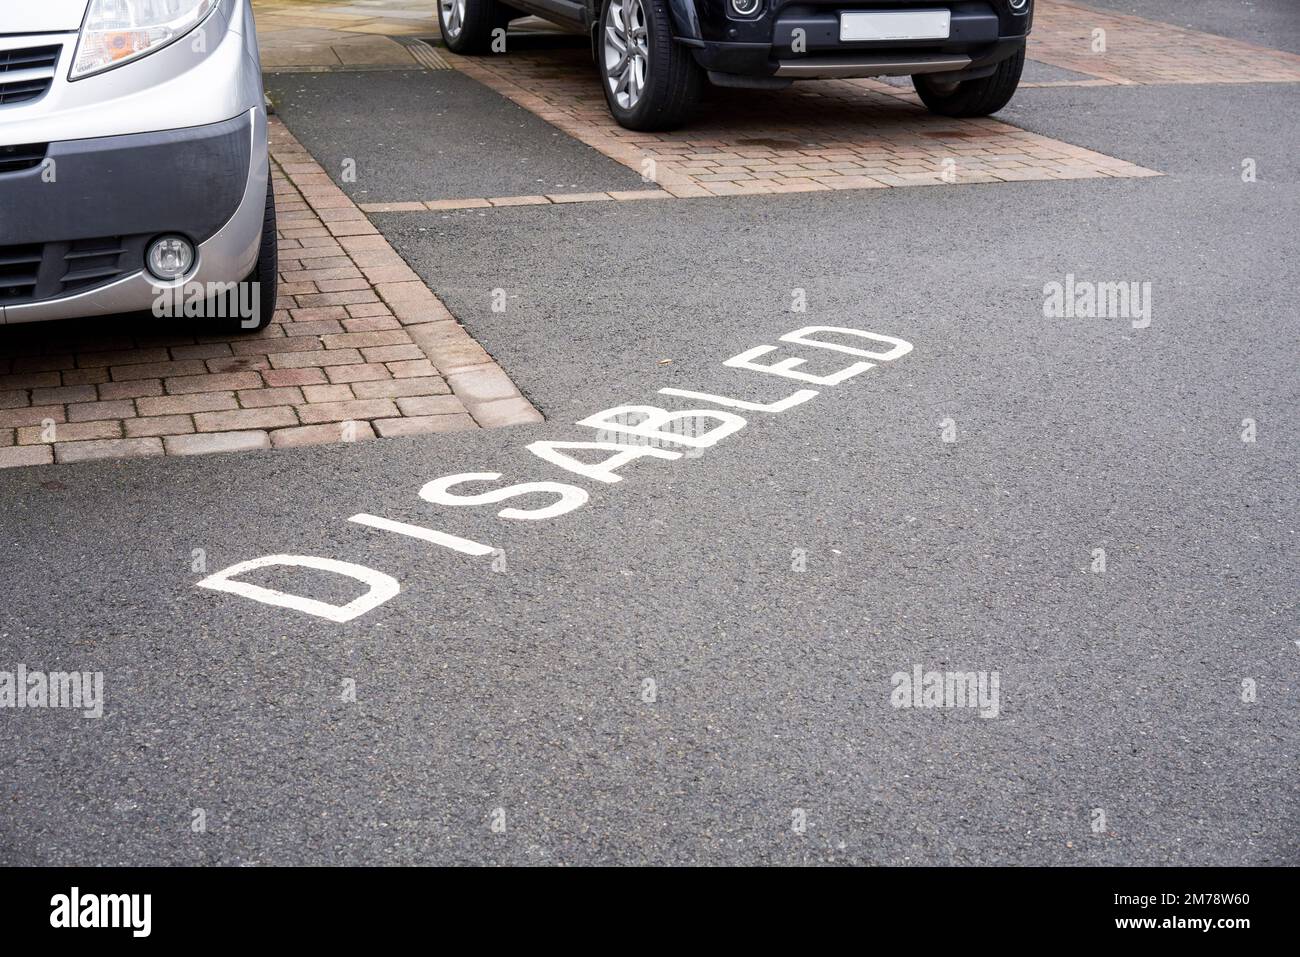 Parkings handicapés avec le mot Disabled peint en blanc sur la surface en asphalte du tarmac Banque D'Images